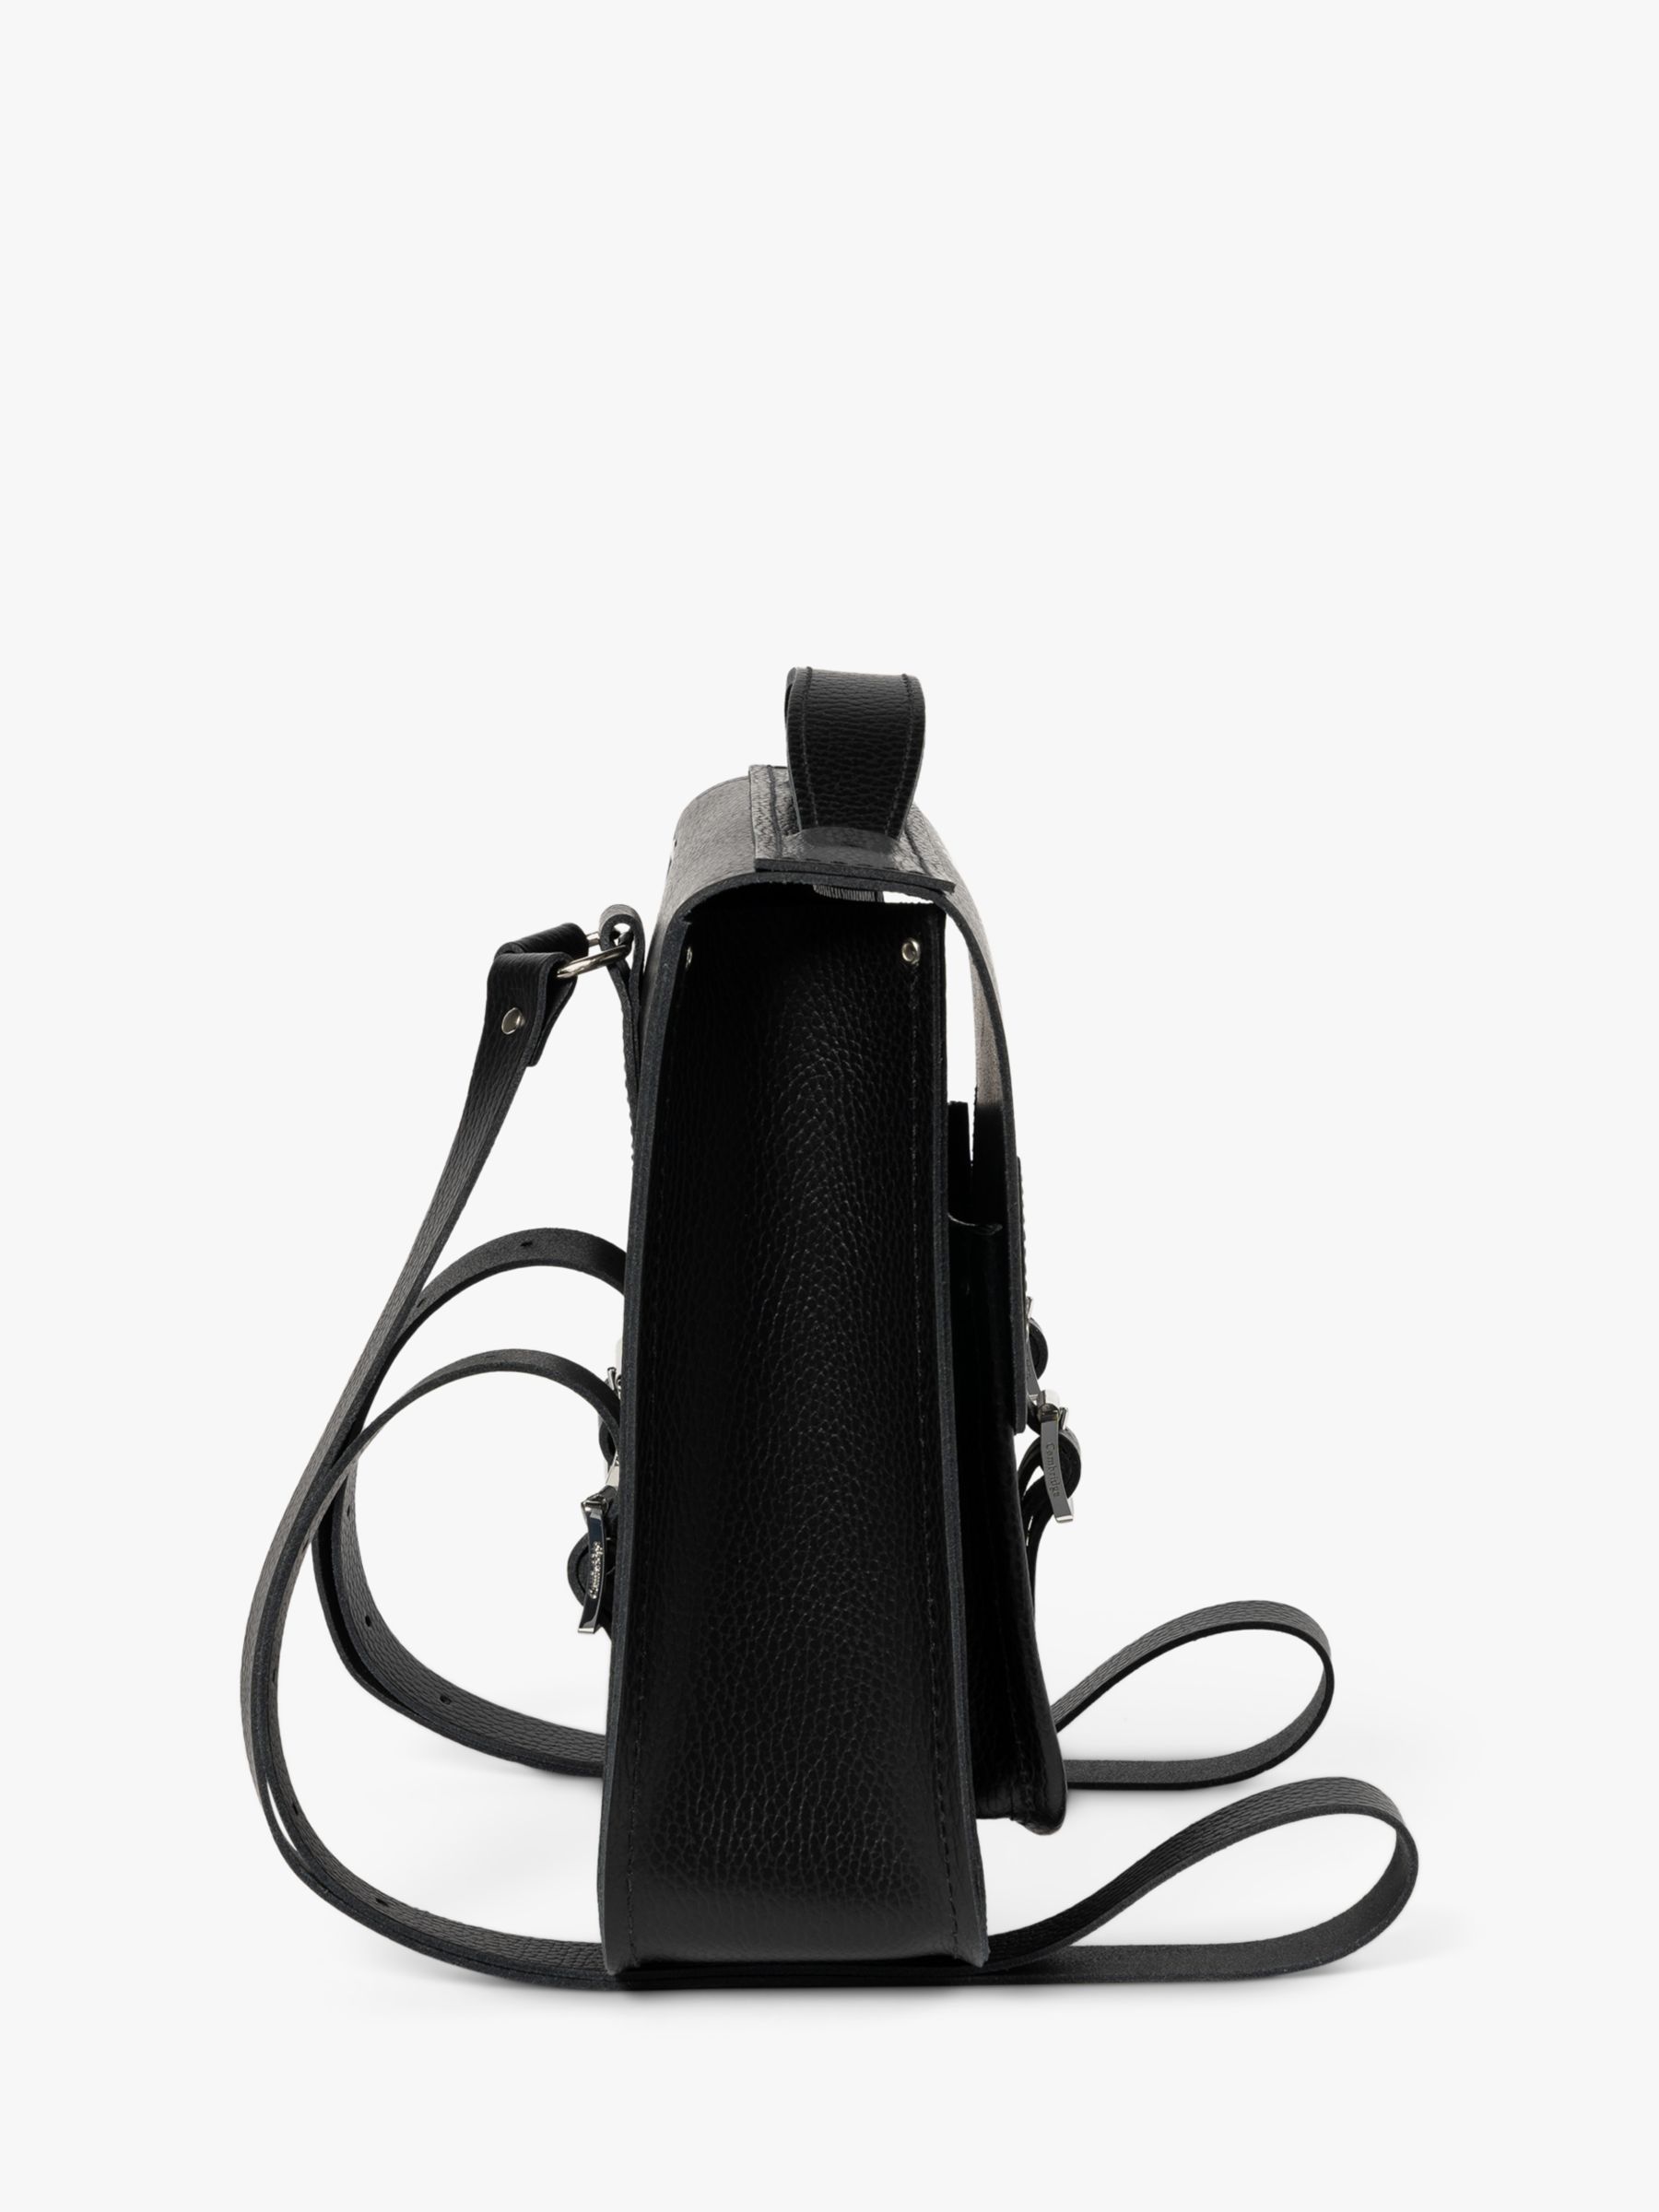 Cambridge Satchel Small Portrait Leather Backpack, Black Celtic Grain ...